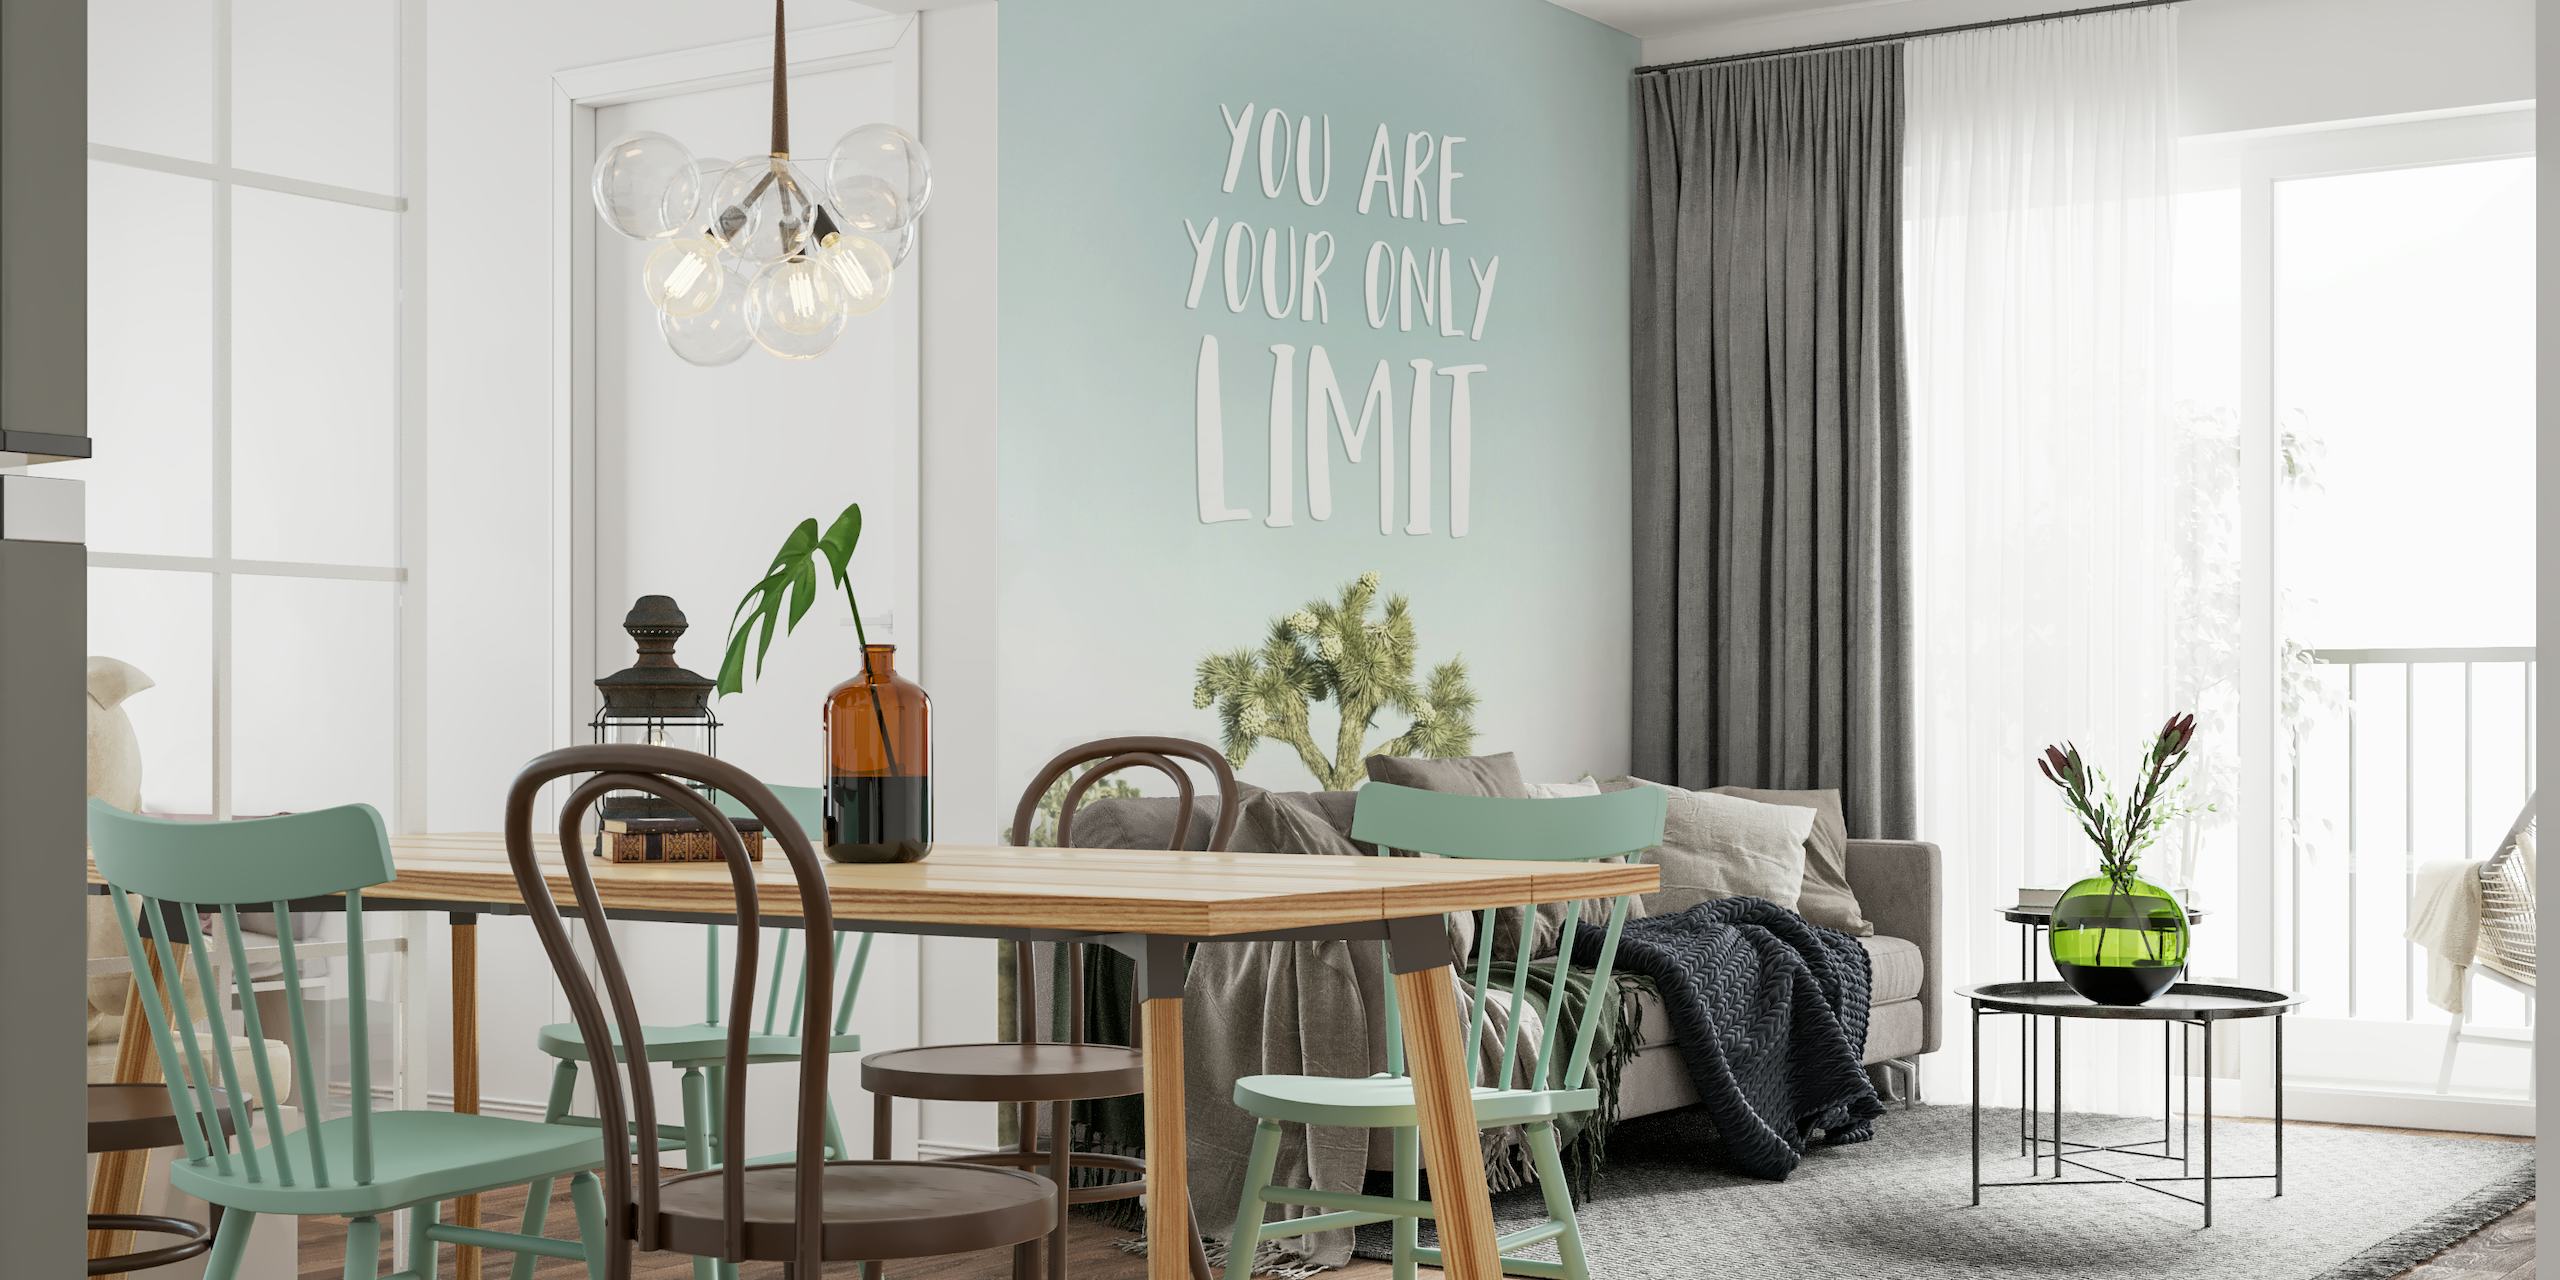 Inspirerende trelandskapsveggmaleri med teksten "You are your only limit".